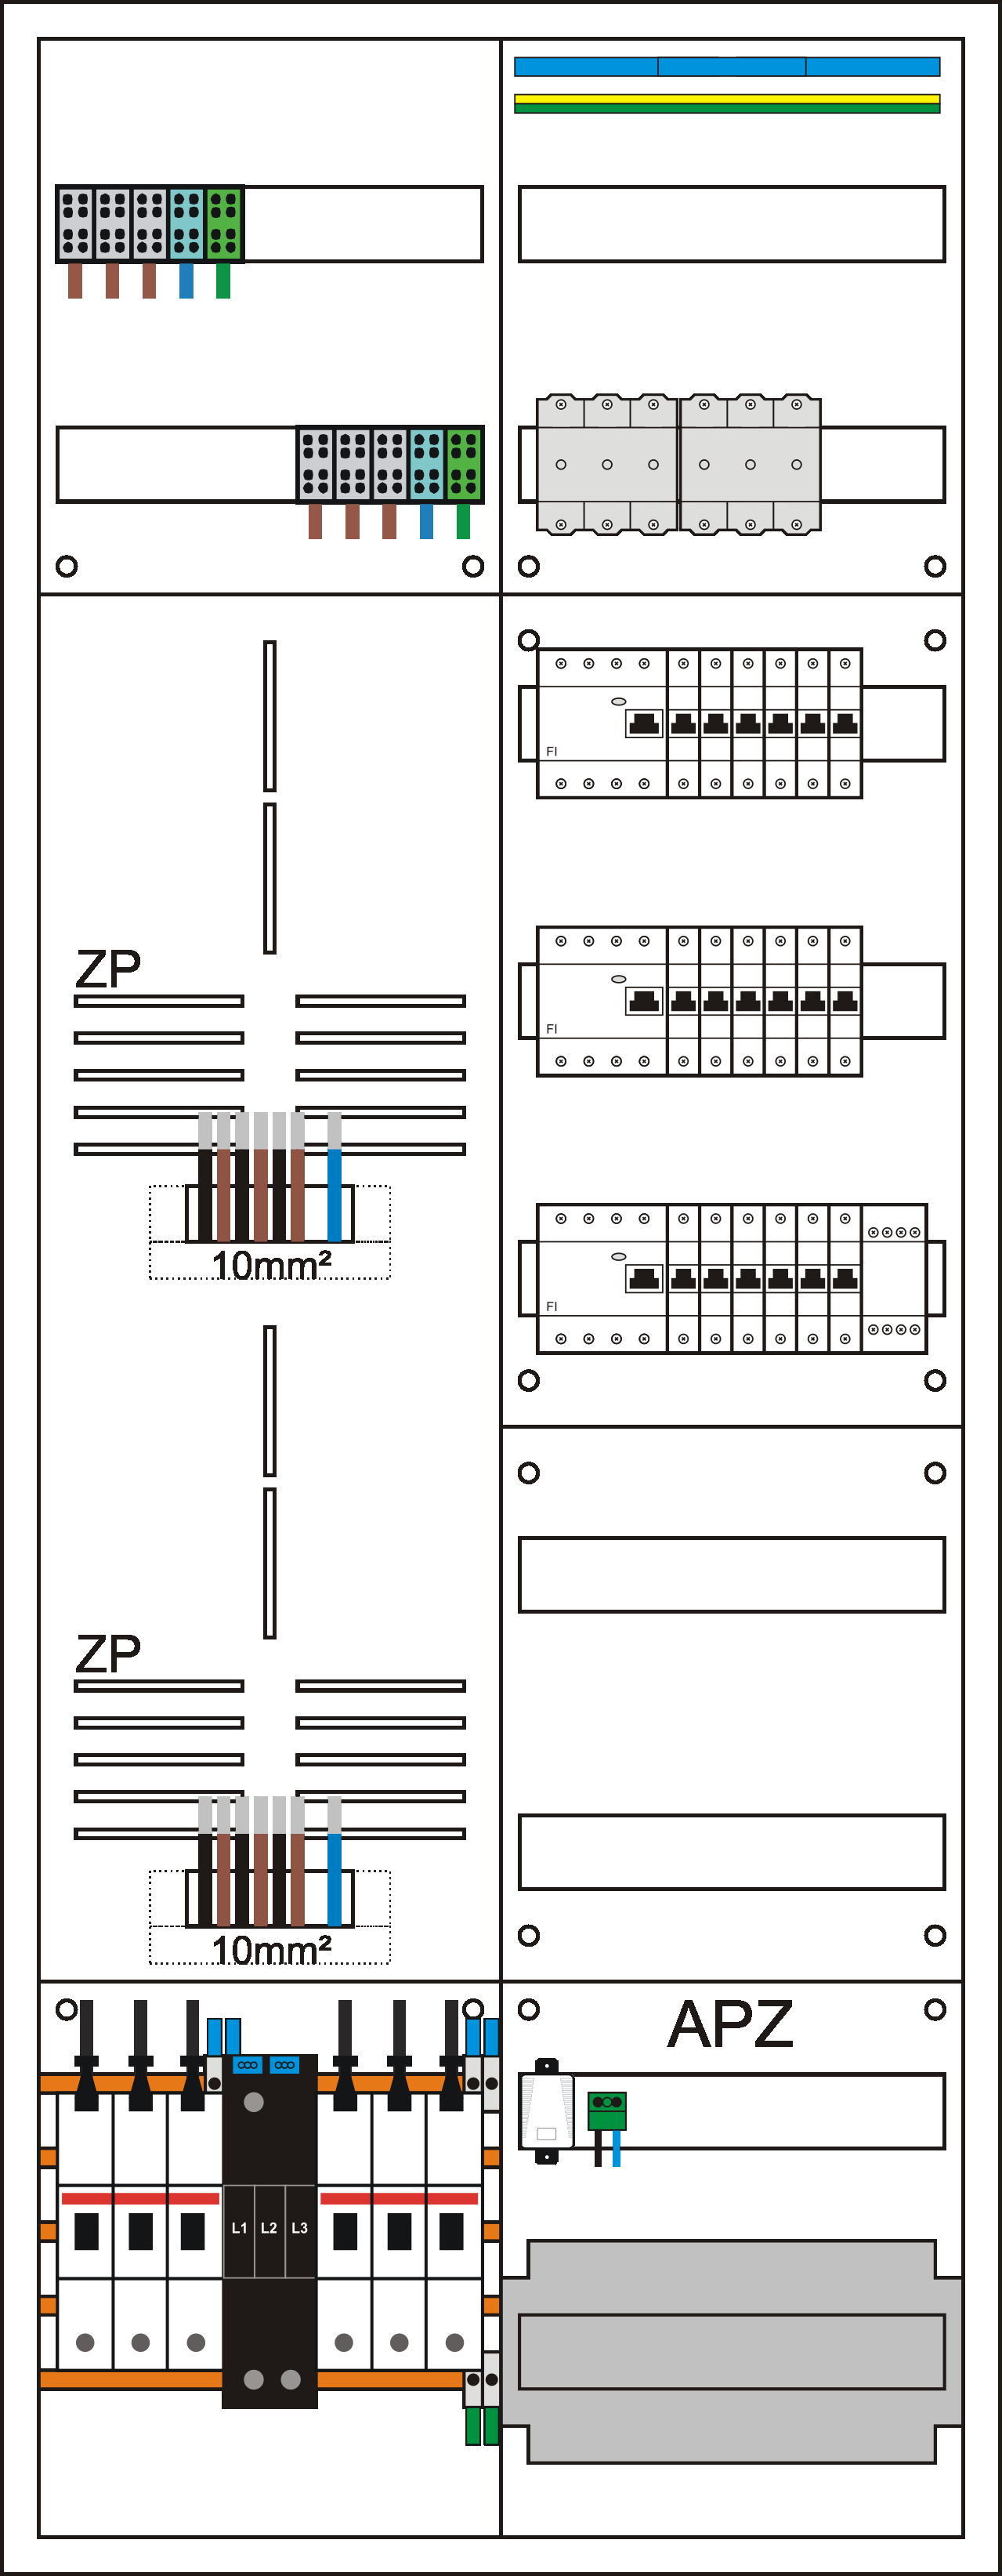 Zählerschrank 3HZ bestückt 2 Zählerplätze, 1 Verteiler mit APZ mit 10mm² Verdrahtung